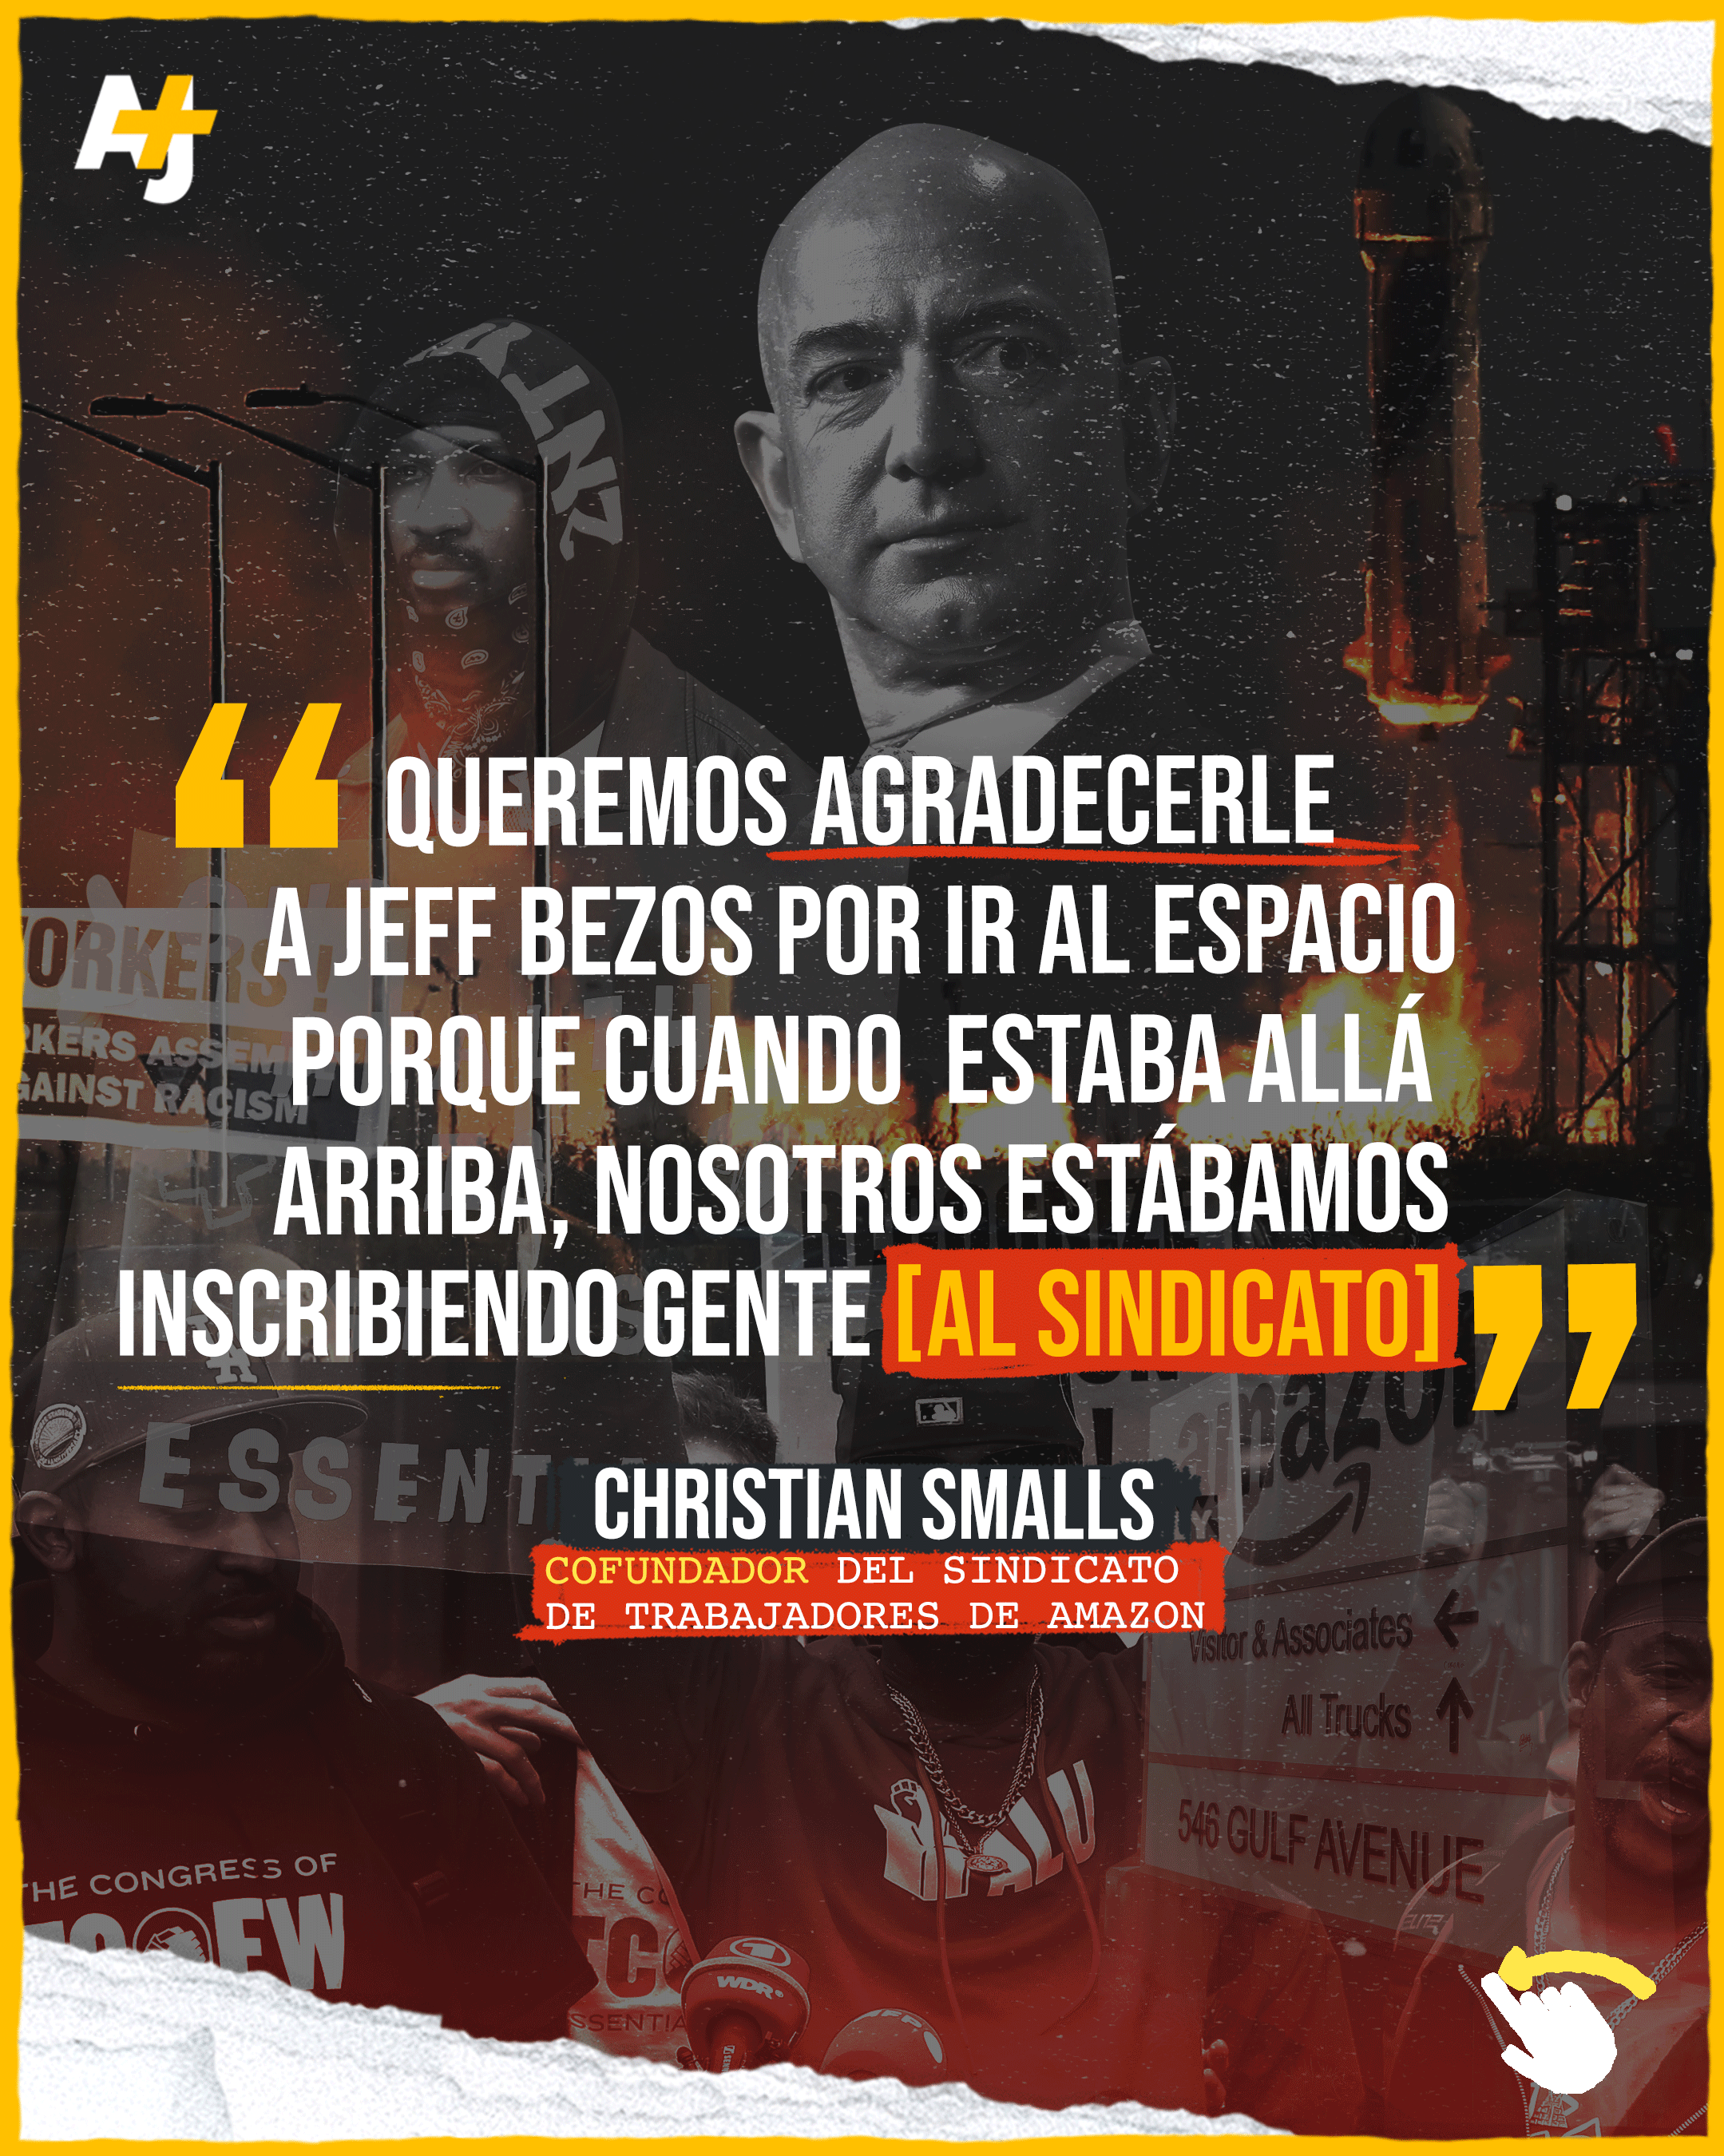 Christian Smalls fue despedido de Amazon por protestar para pedir mejores condiciones laborales